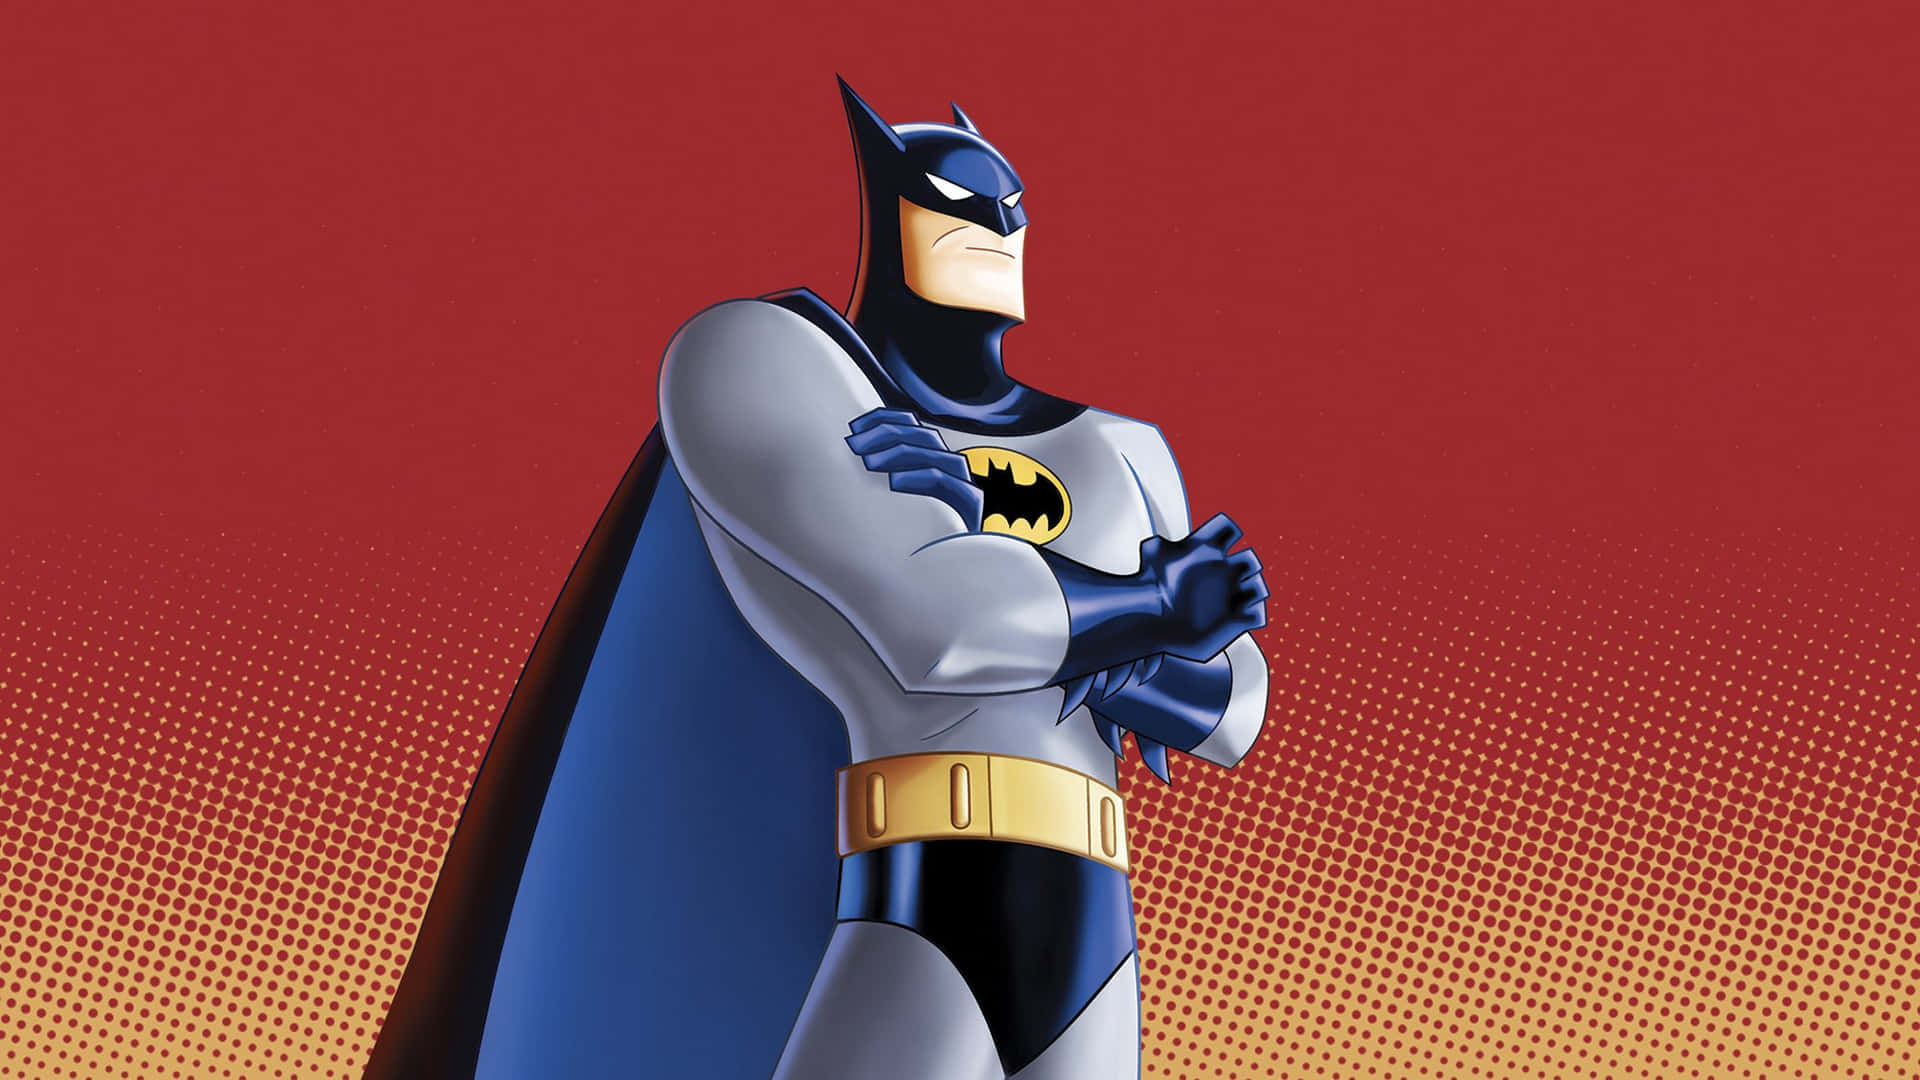 Imagemde Arte De Desenho Animado Retrô Do Batman Para Papel De Parede Do Computador Ou Celular.